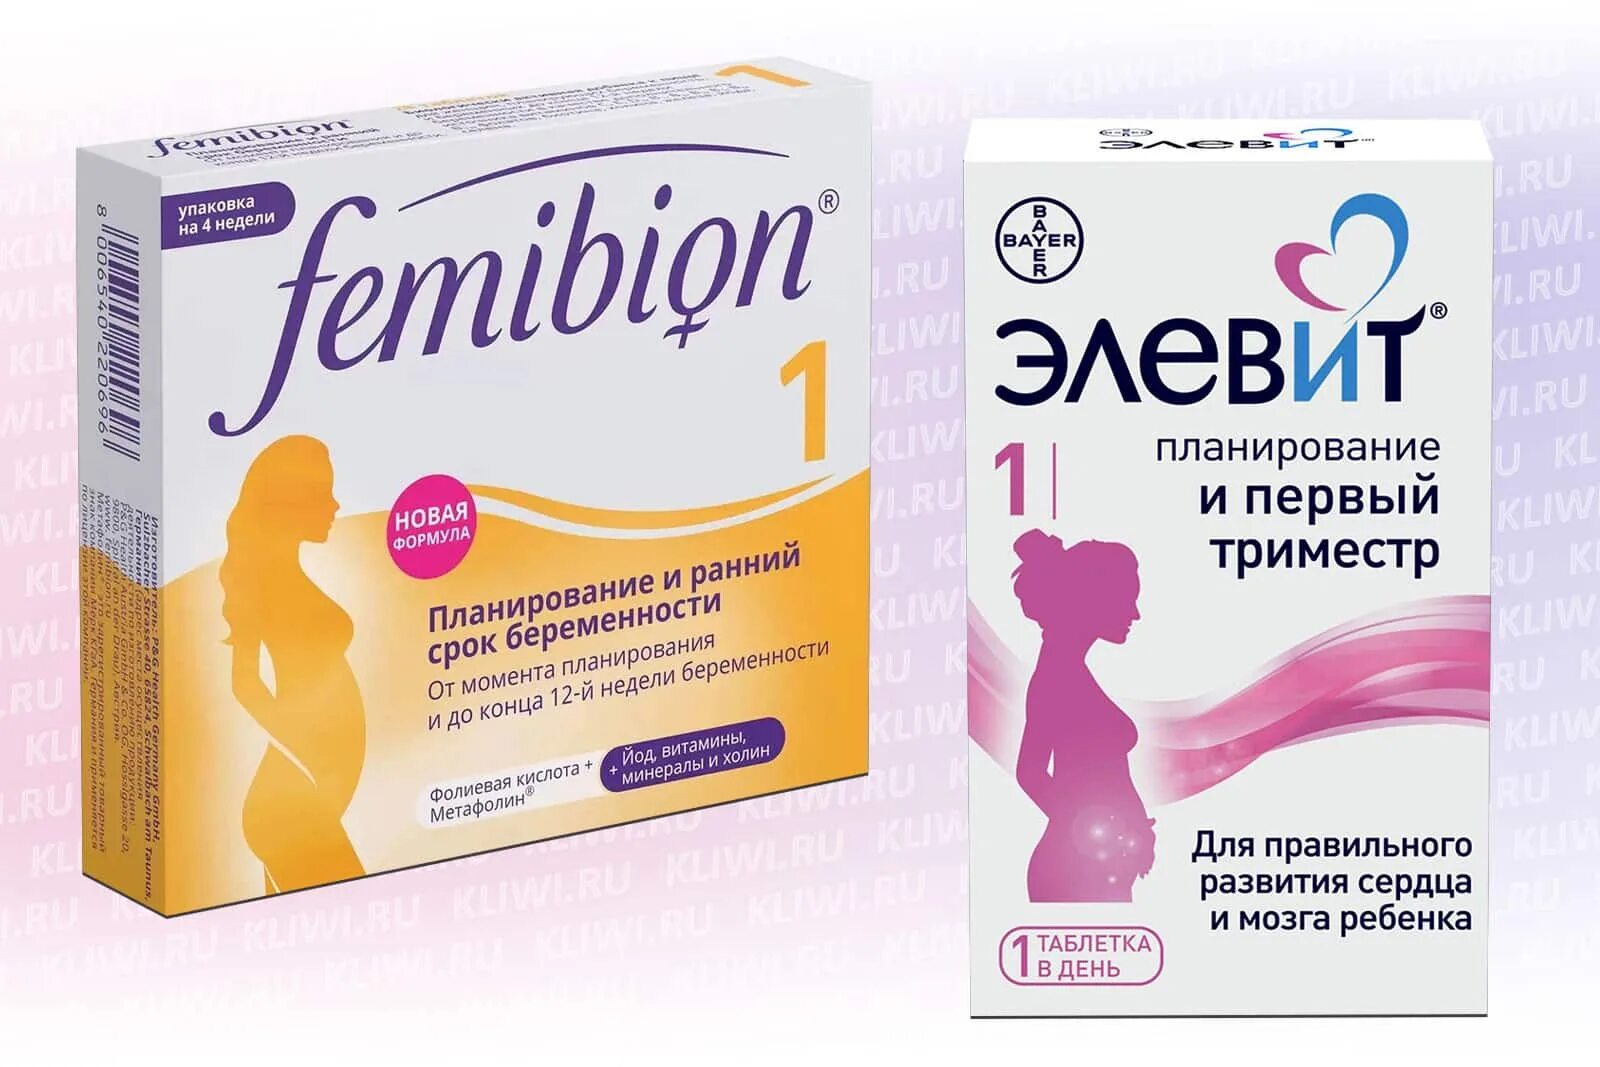 Препараты в первом триместре. Фемибион 1 триместр. Элевит 1 триместр. Витамины для беременных 1 фемибион 1. Витамины Элевит для беременных 1 триместр.